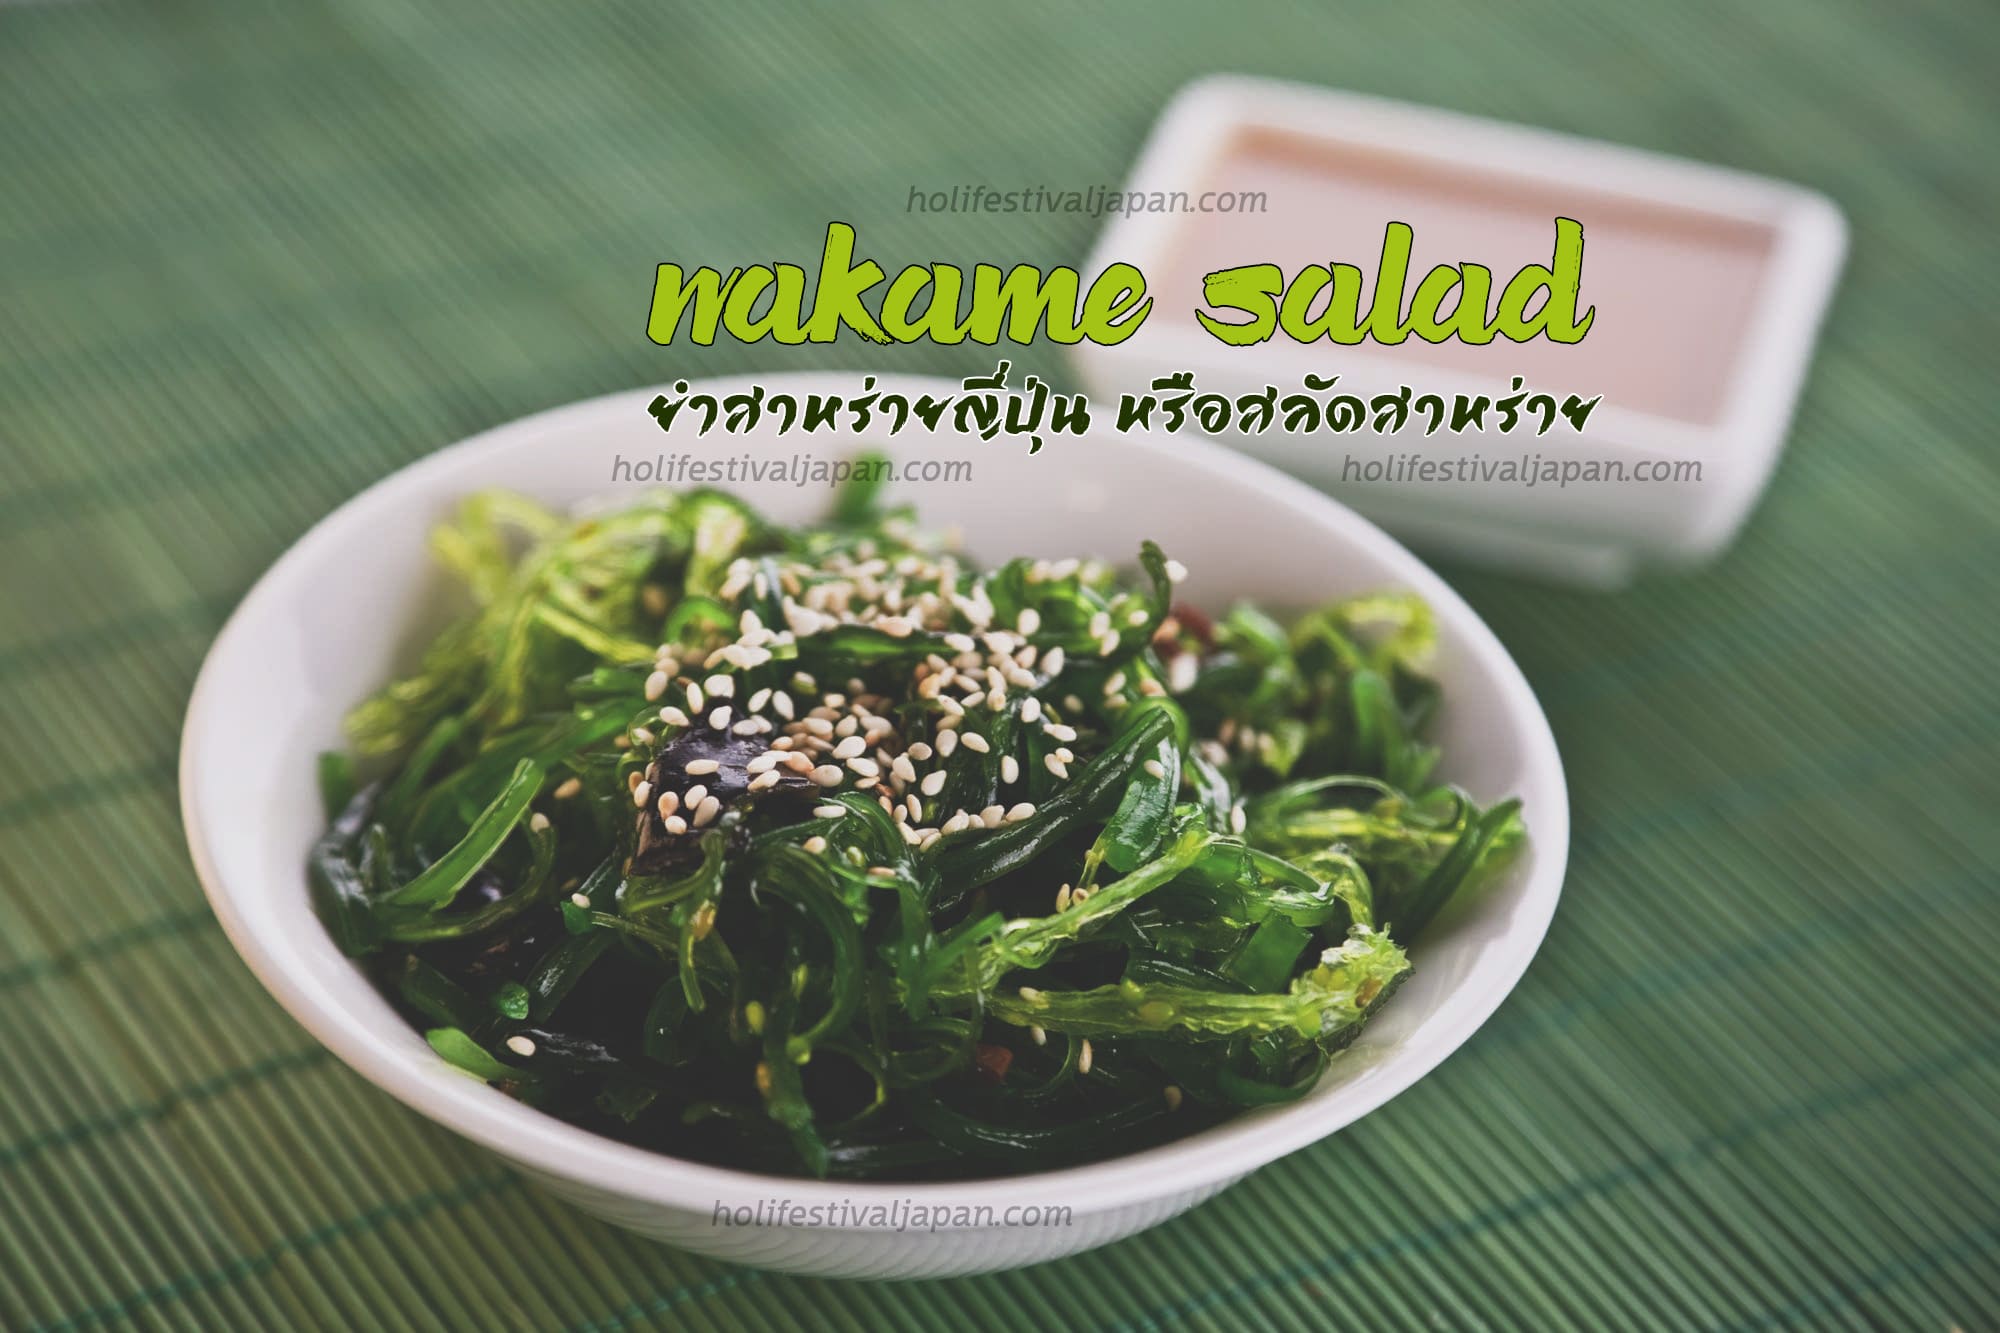 Wakame Salad ถูกใจคนชื่นชอบการทานสลัดสาหร่ายญี่ปุ่น กับอาหารยอดนิยม